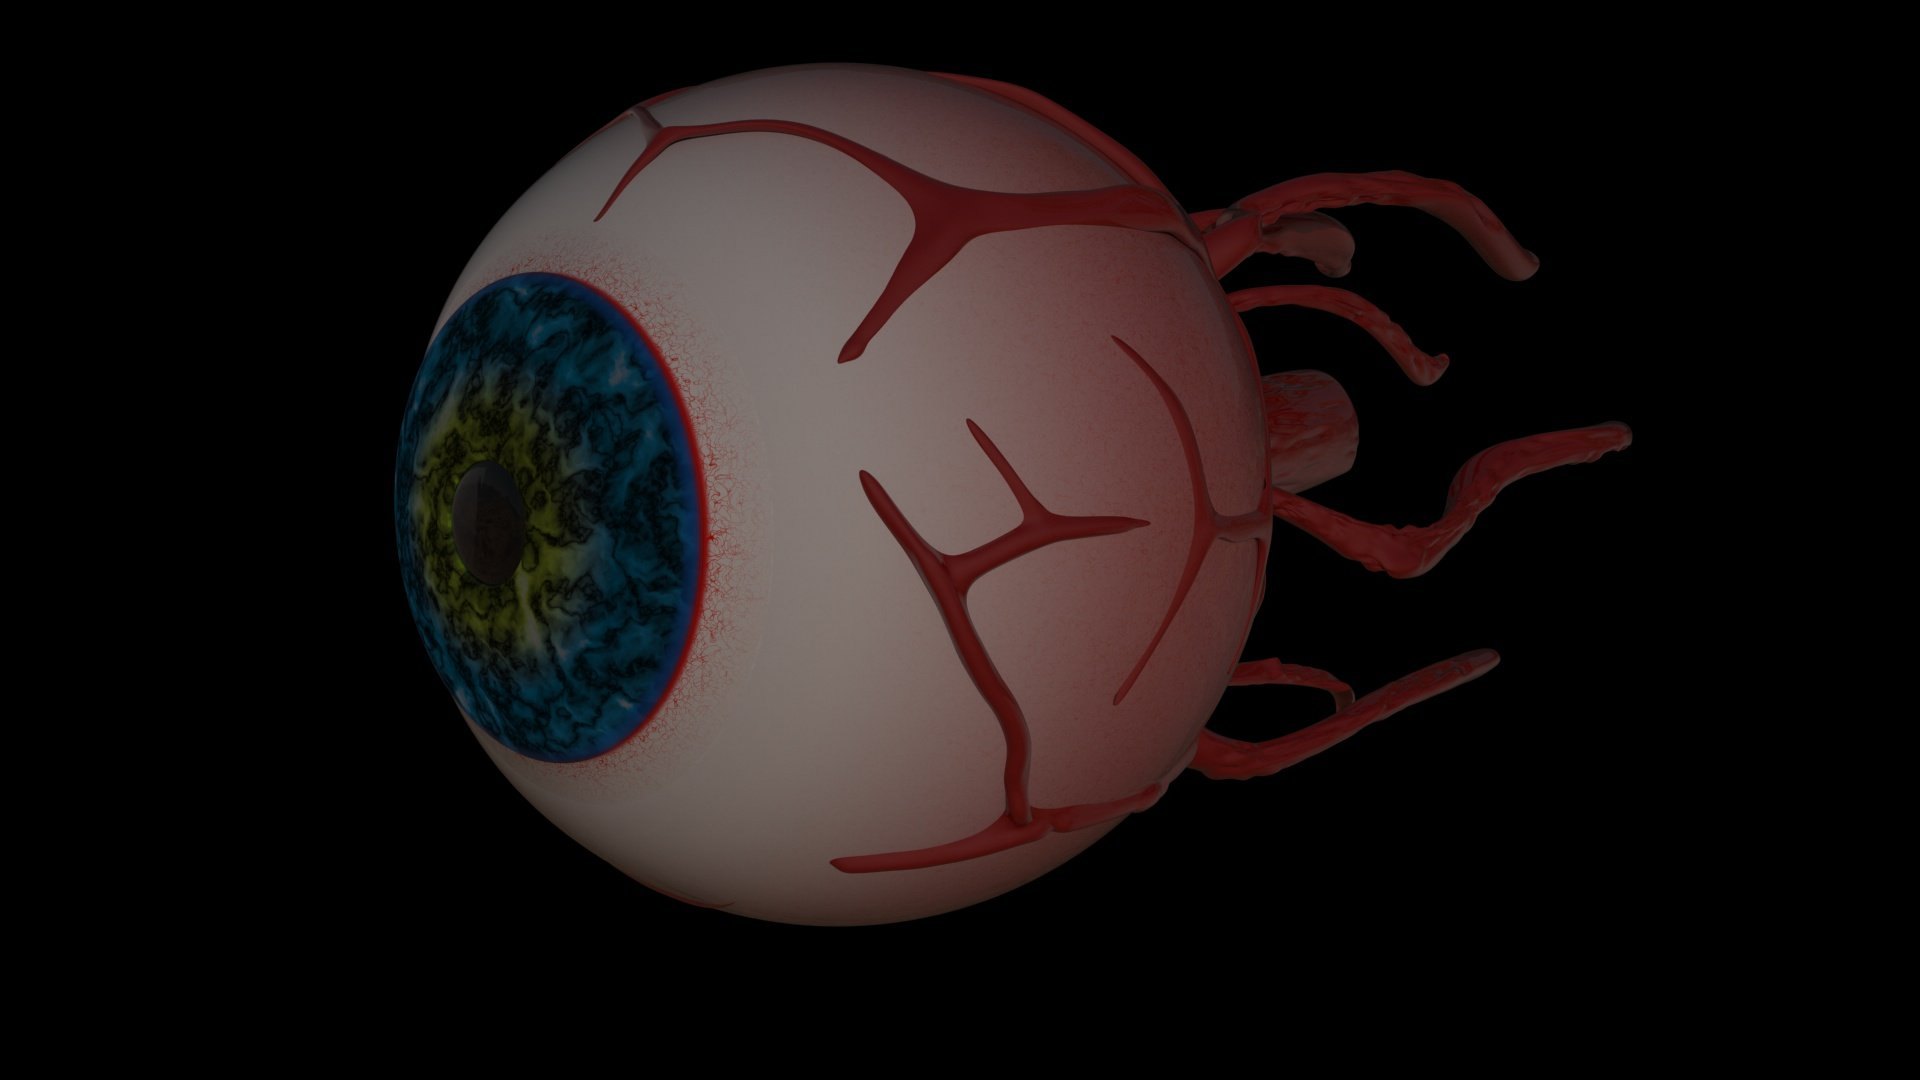 Eye of cthulhu terraria theme фото 3